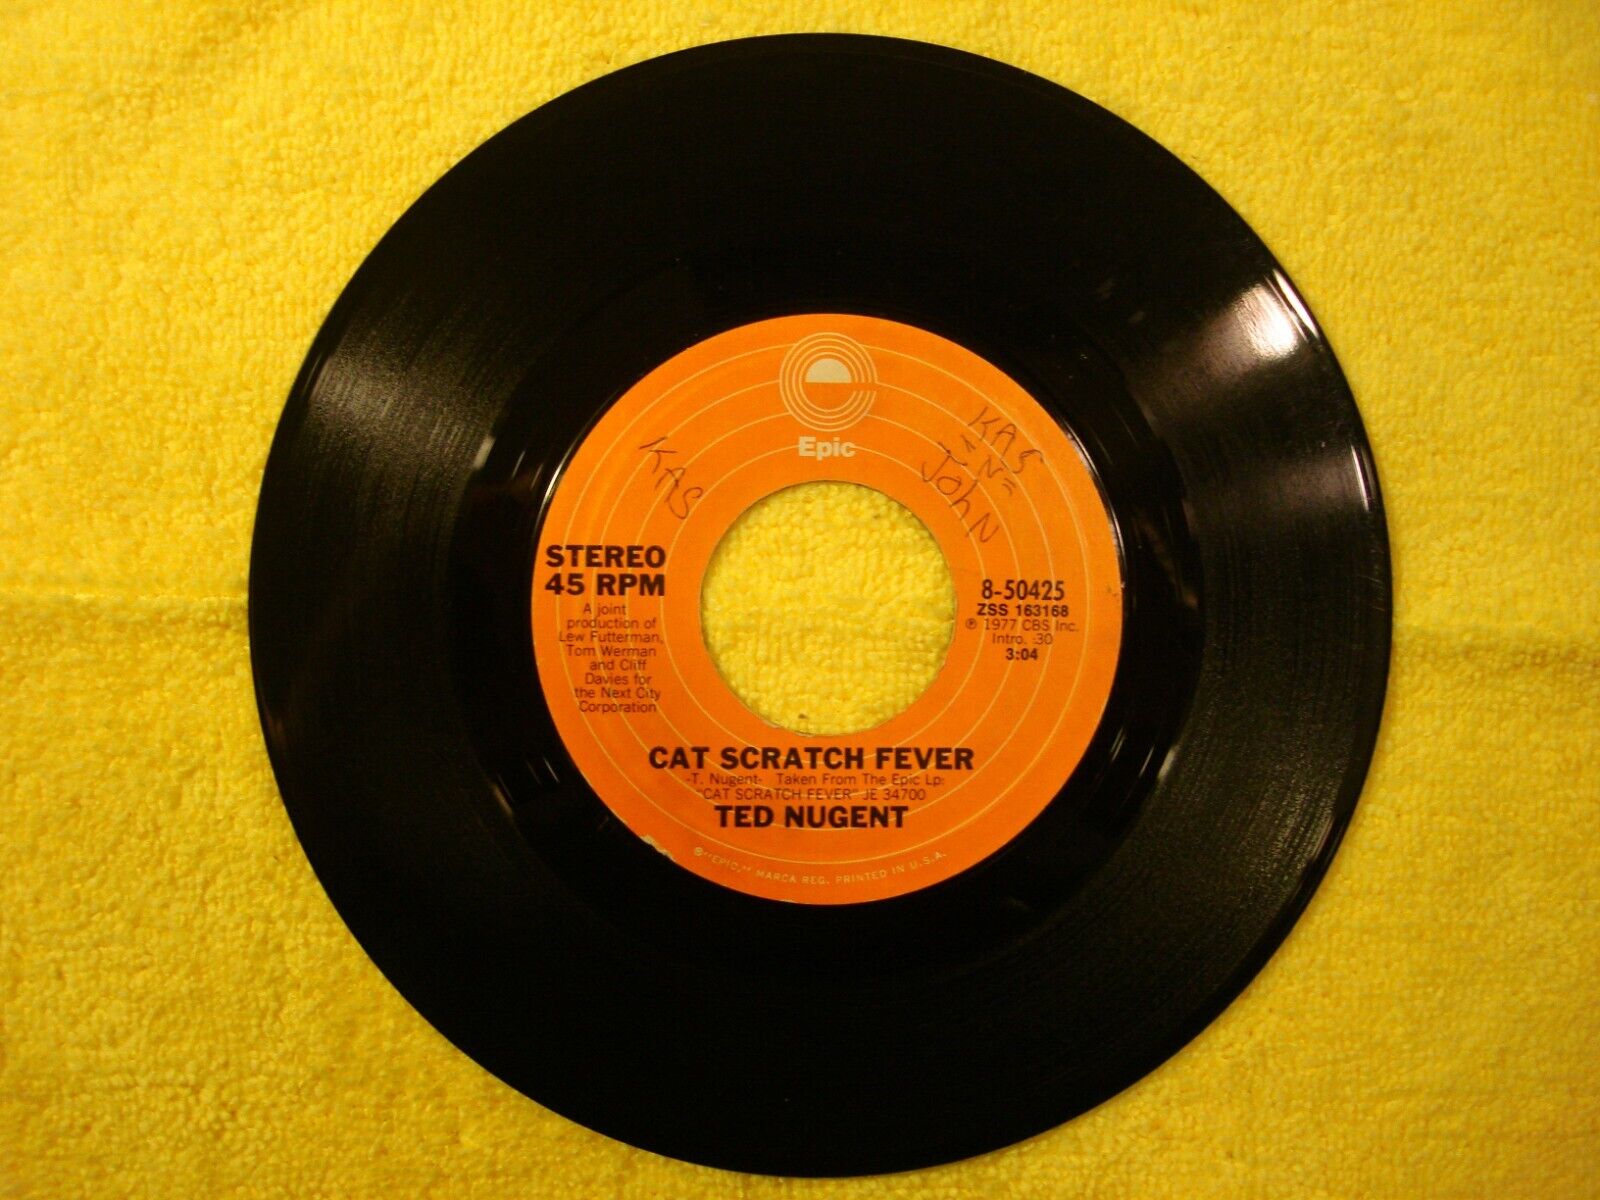 1977 TED NUGENT "CAT SCRATCH FEVER" 45 rpm 7"